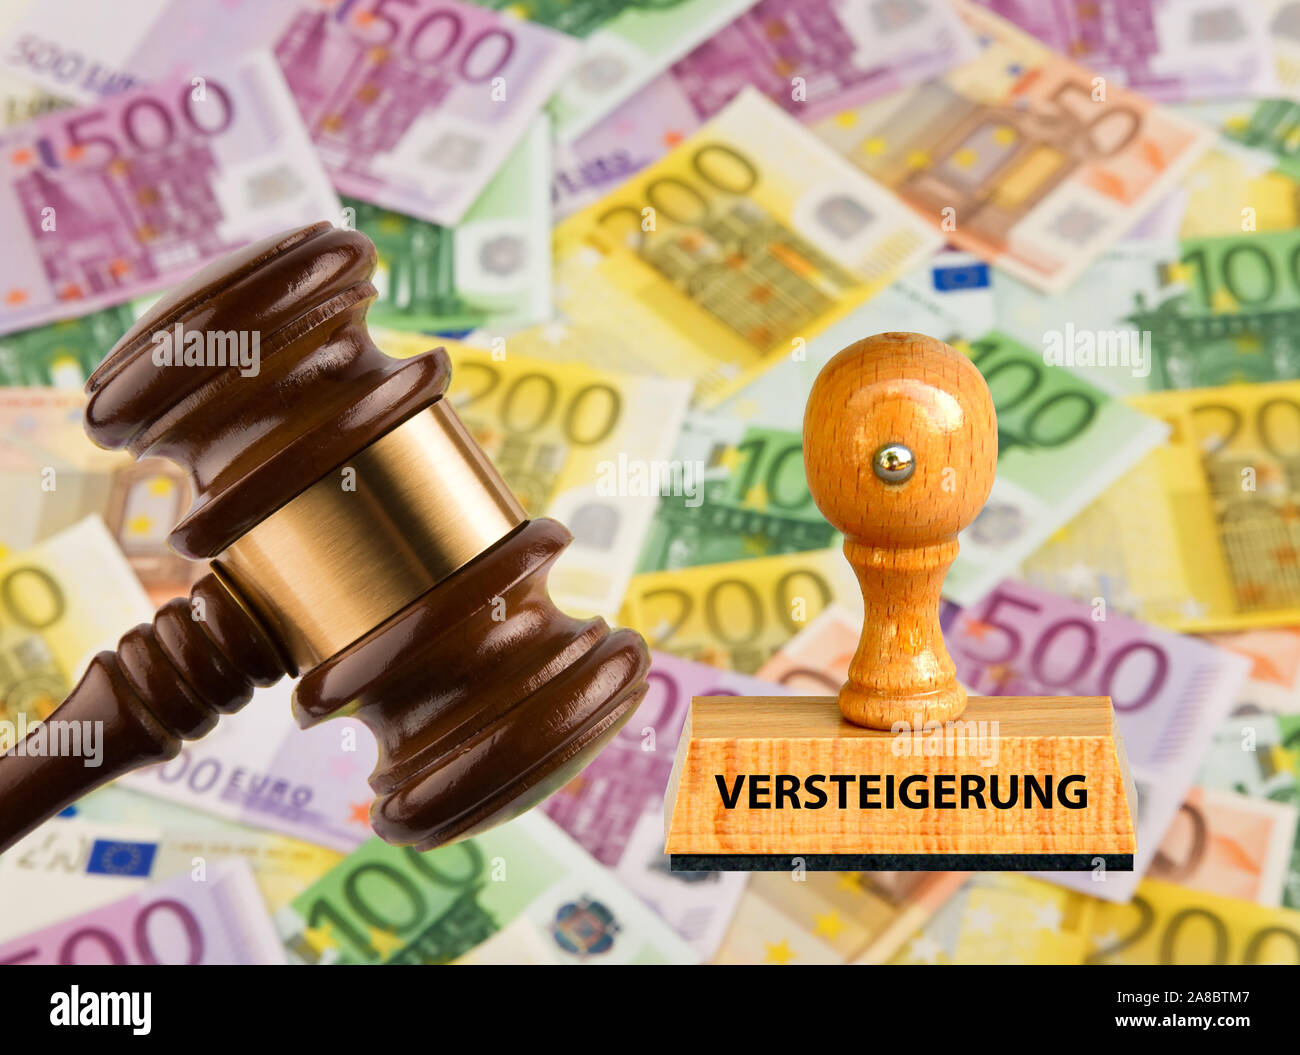 Versteigerung, Hammer, Auktionator, Zuschlag, Hoechstgebot, Bieter, Euro, Banknoten Stock Photo